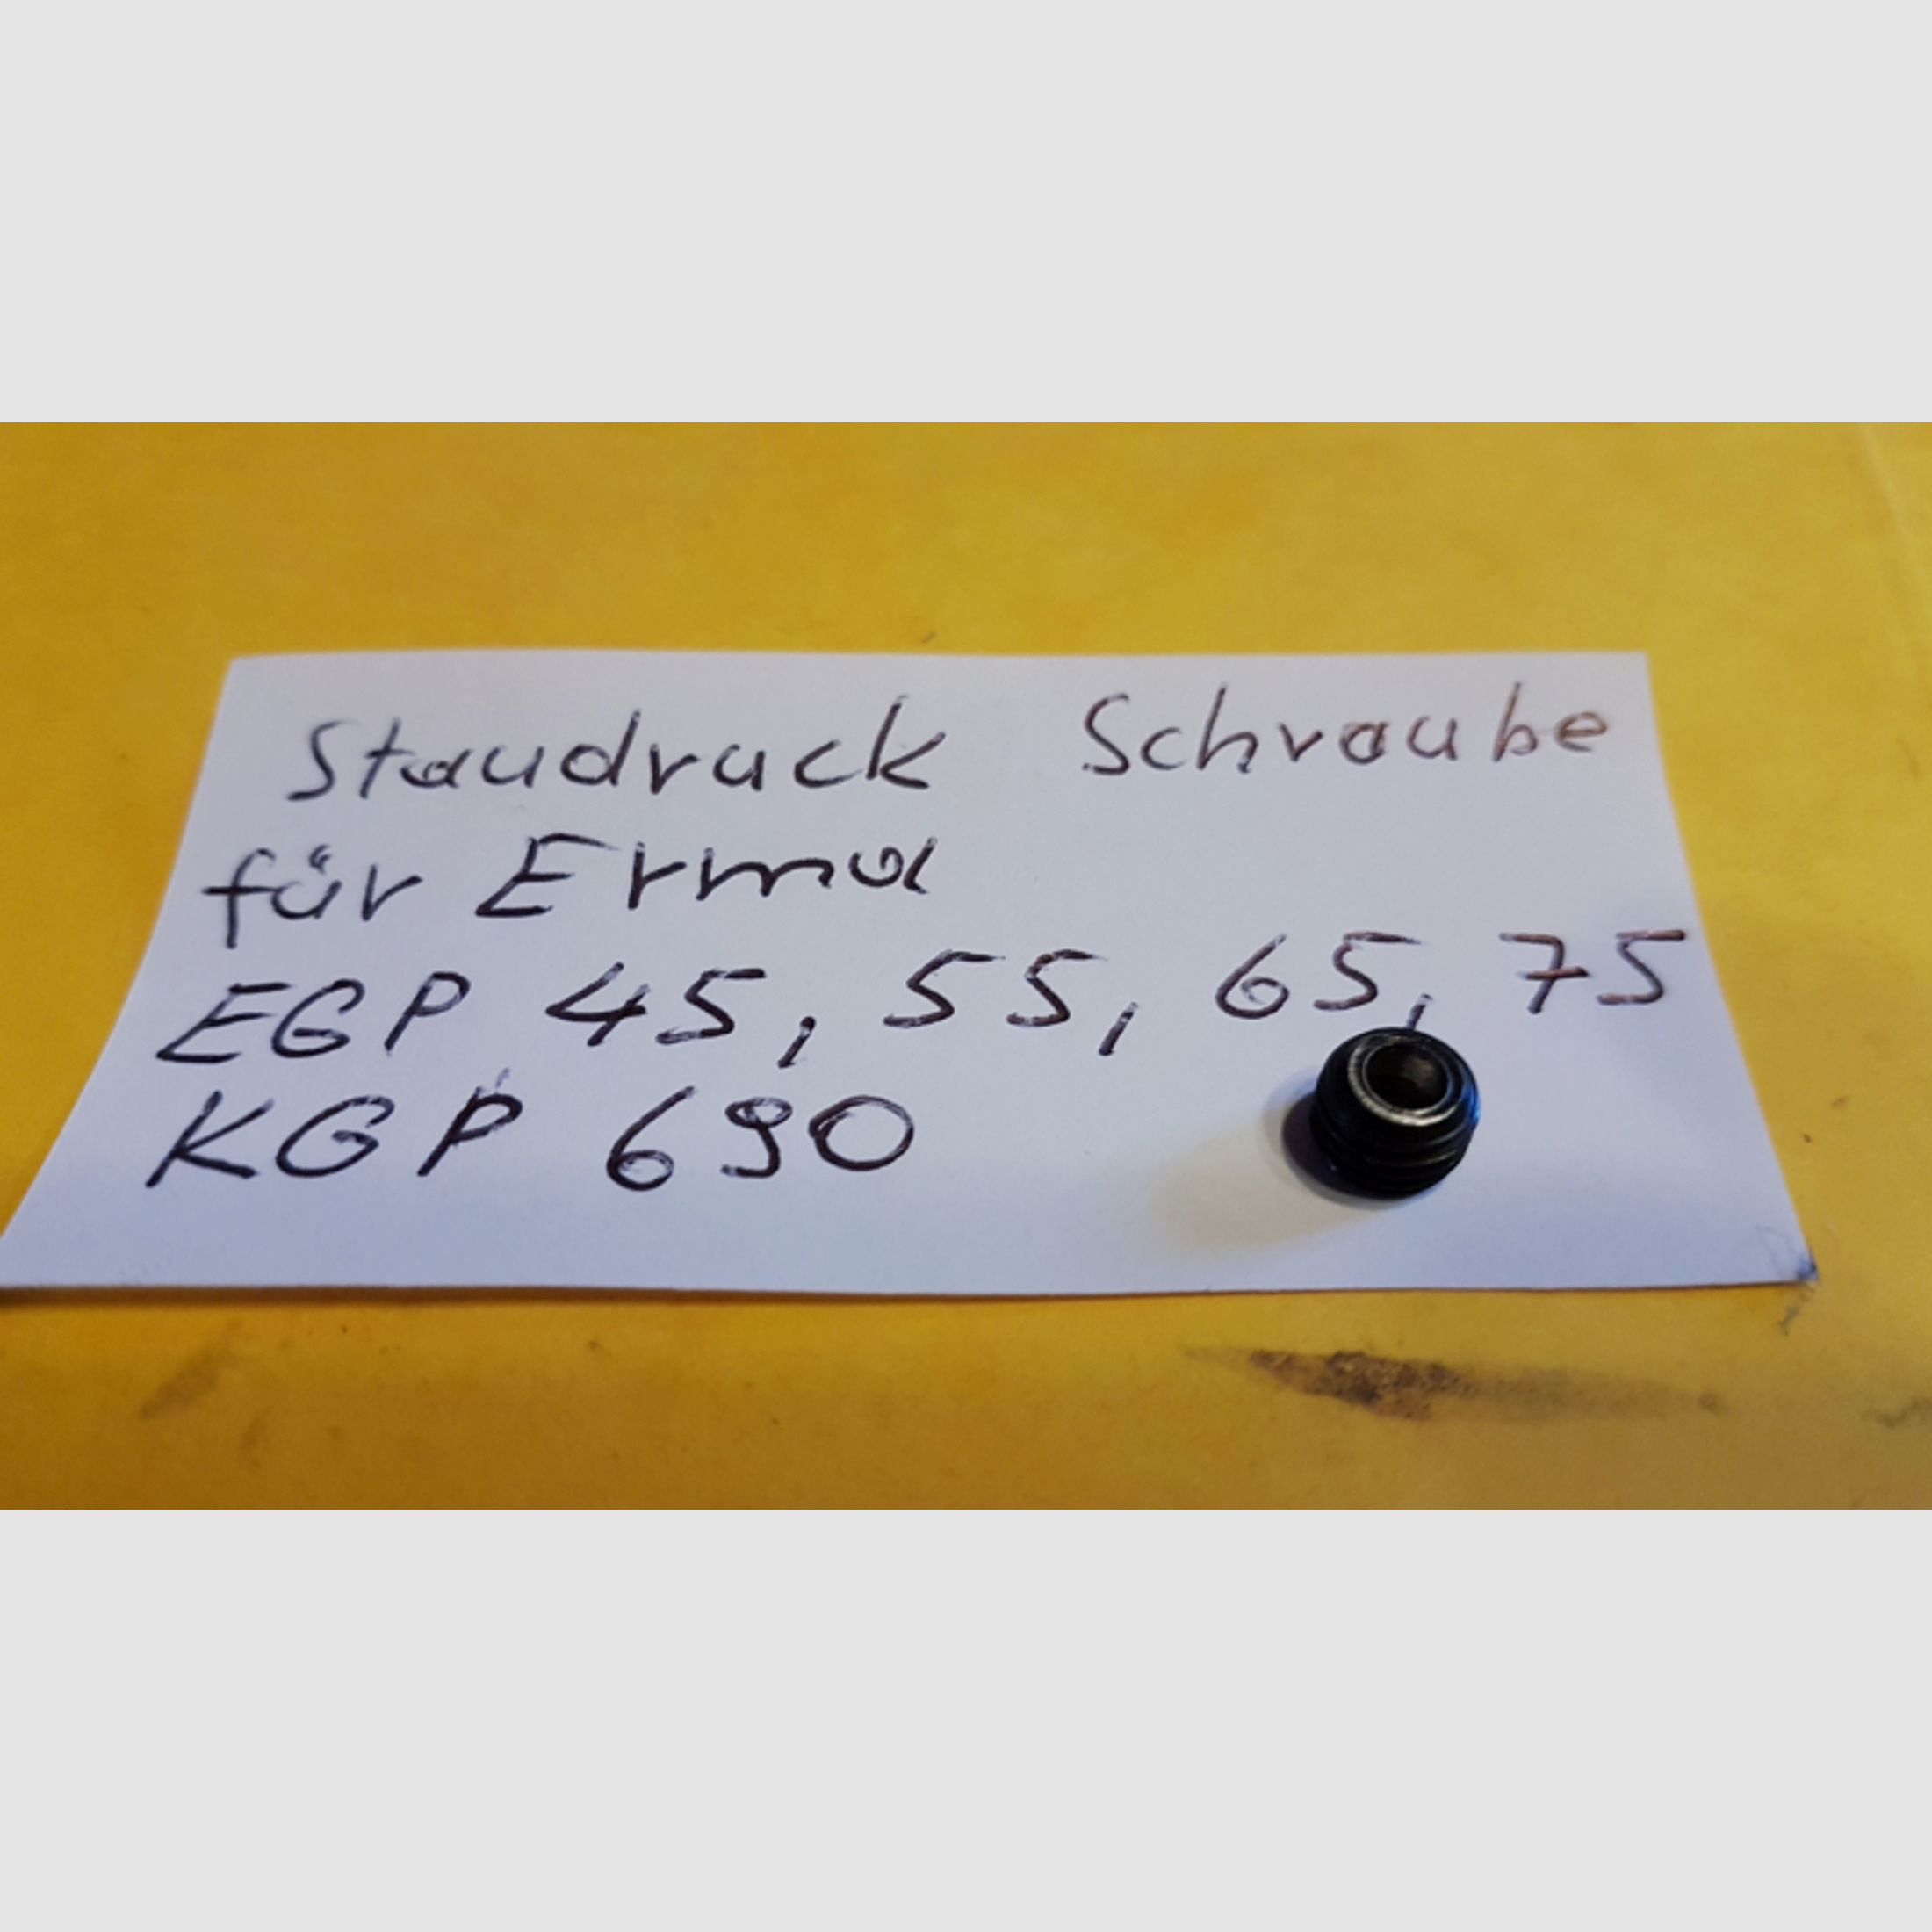 Staudruck Schraube _für ERMA EGP 45 ,55 ,65, 75,88, ;KGP 690 ,____ Druckstau-Schraube ________ >>>>>